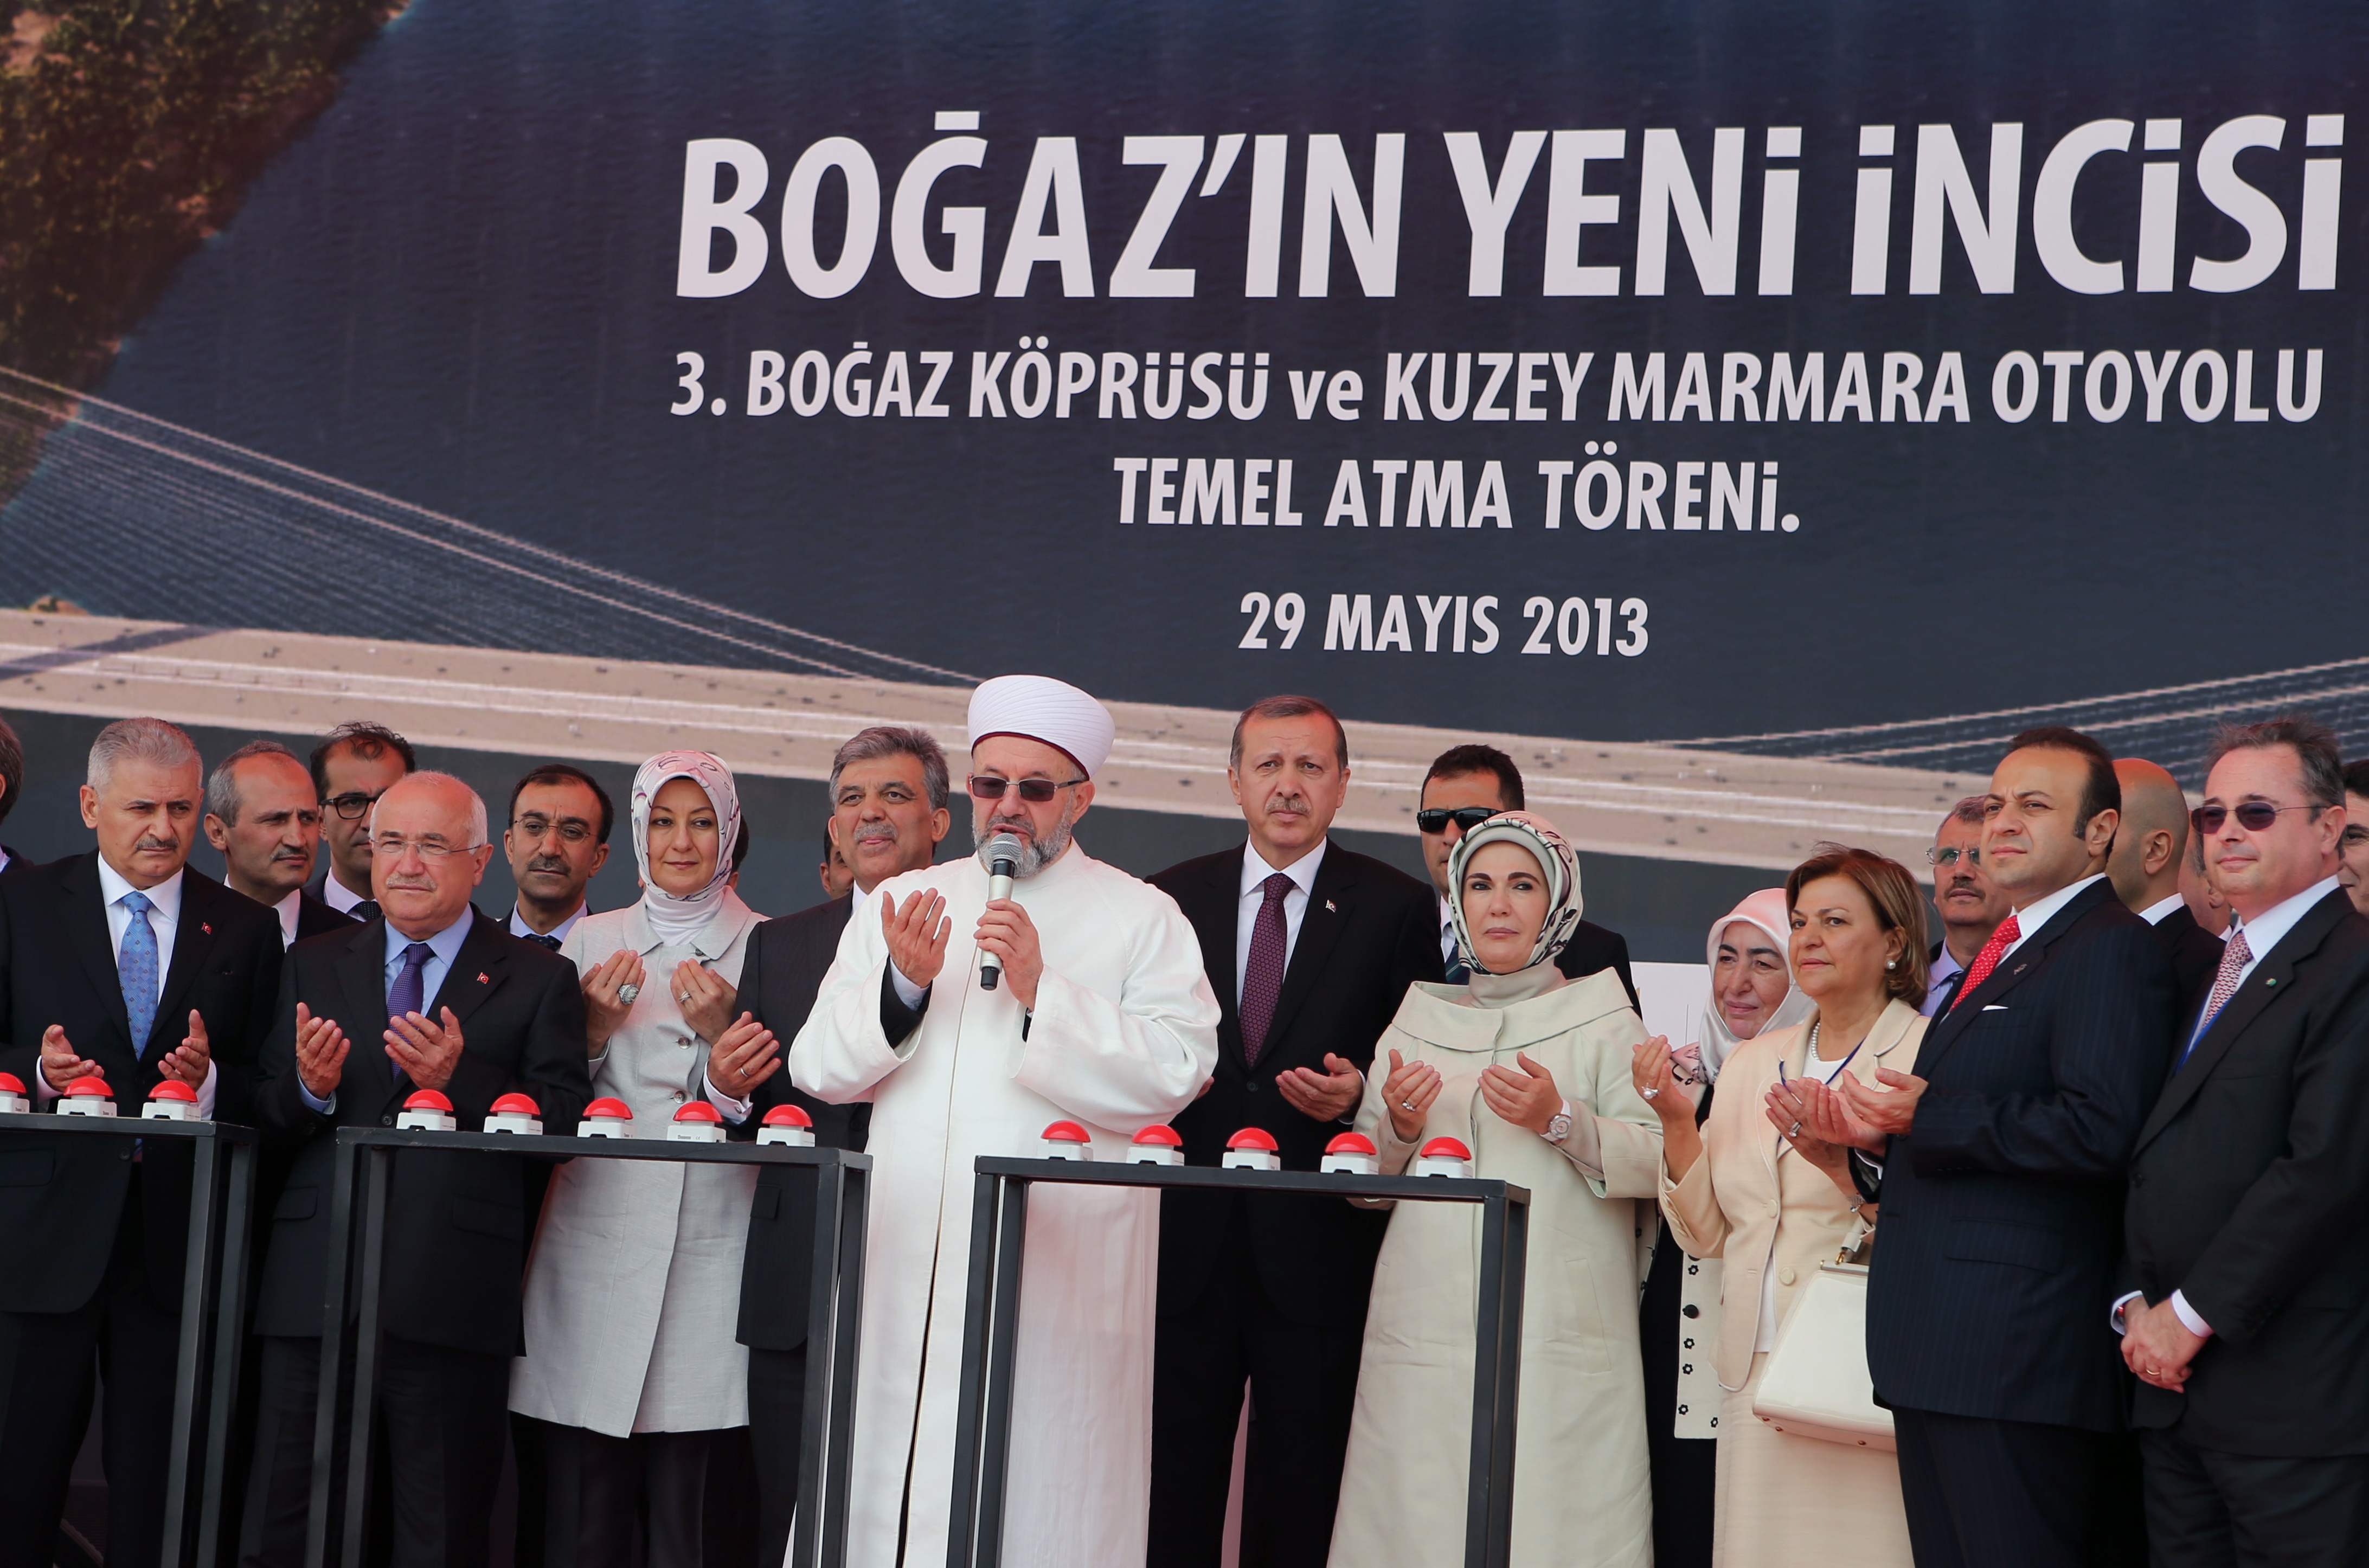 Οθωμανική... νεκρανάσταση στη θεμελίωση της τρίτης γέφυρας του Βοσπόρου